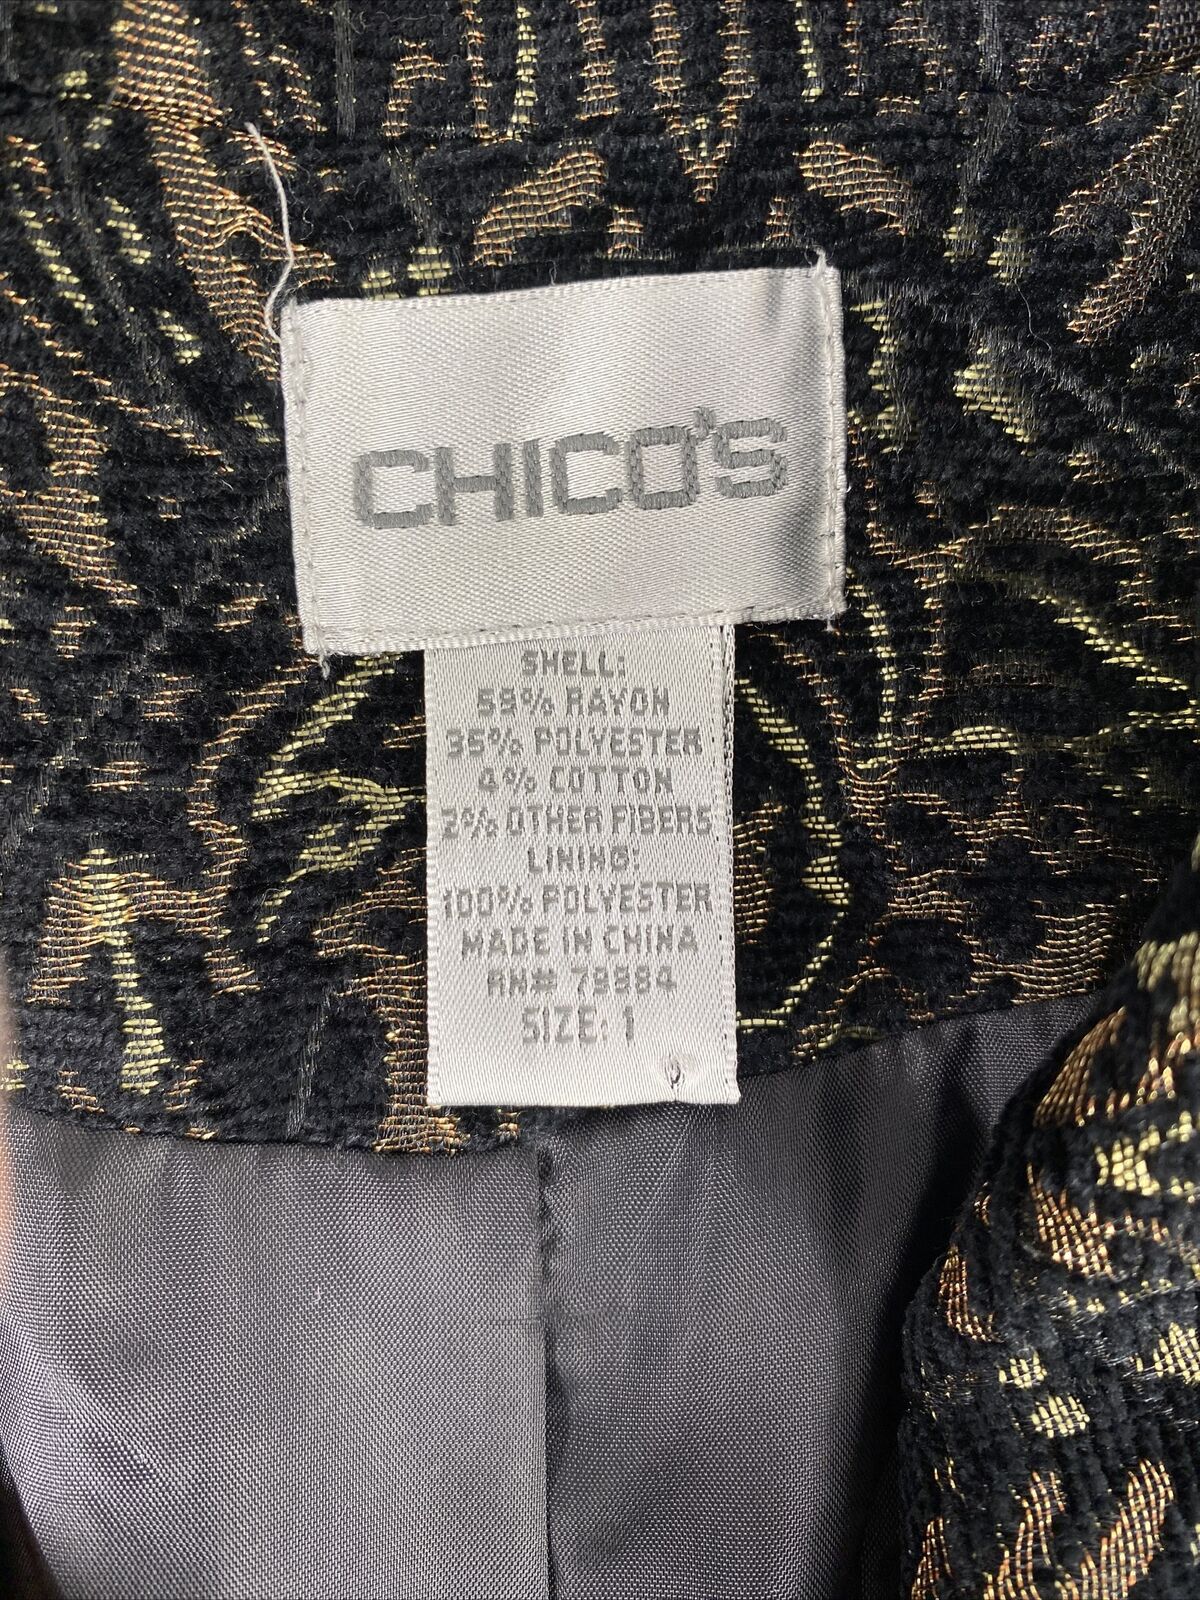 Chico's Chaqueta tipo tapiz con botones metálicos en negro y bronce para mujer - 1/M